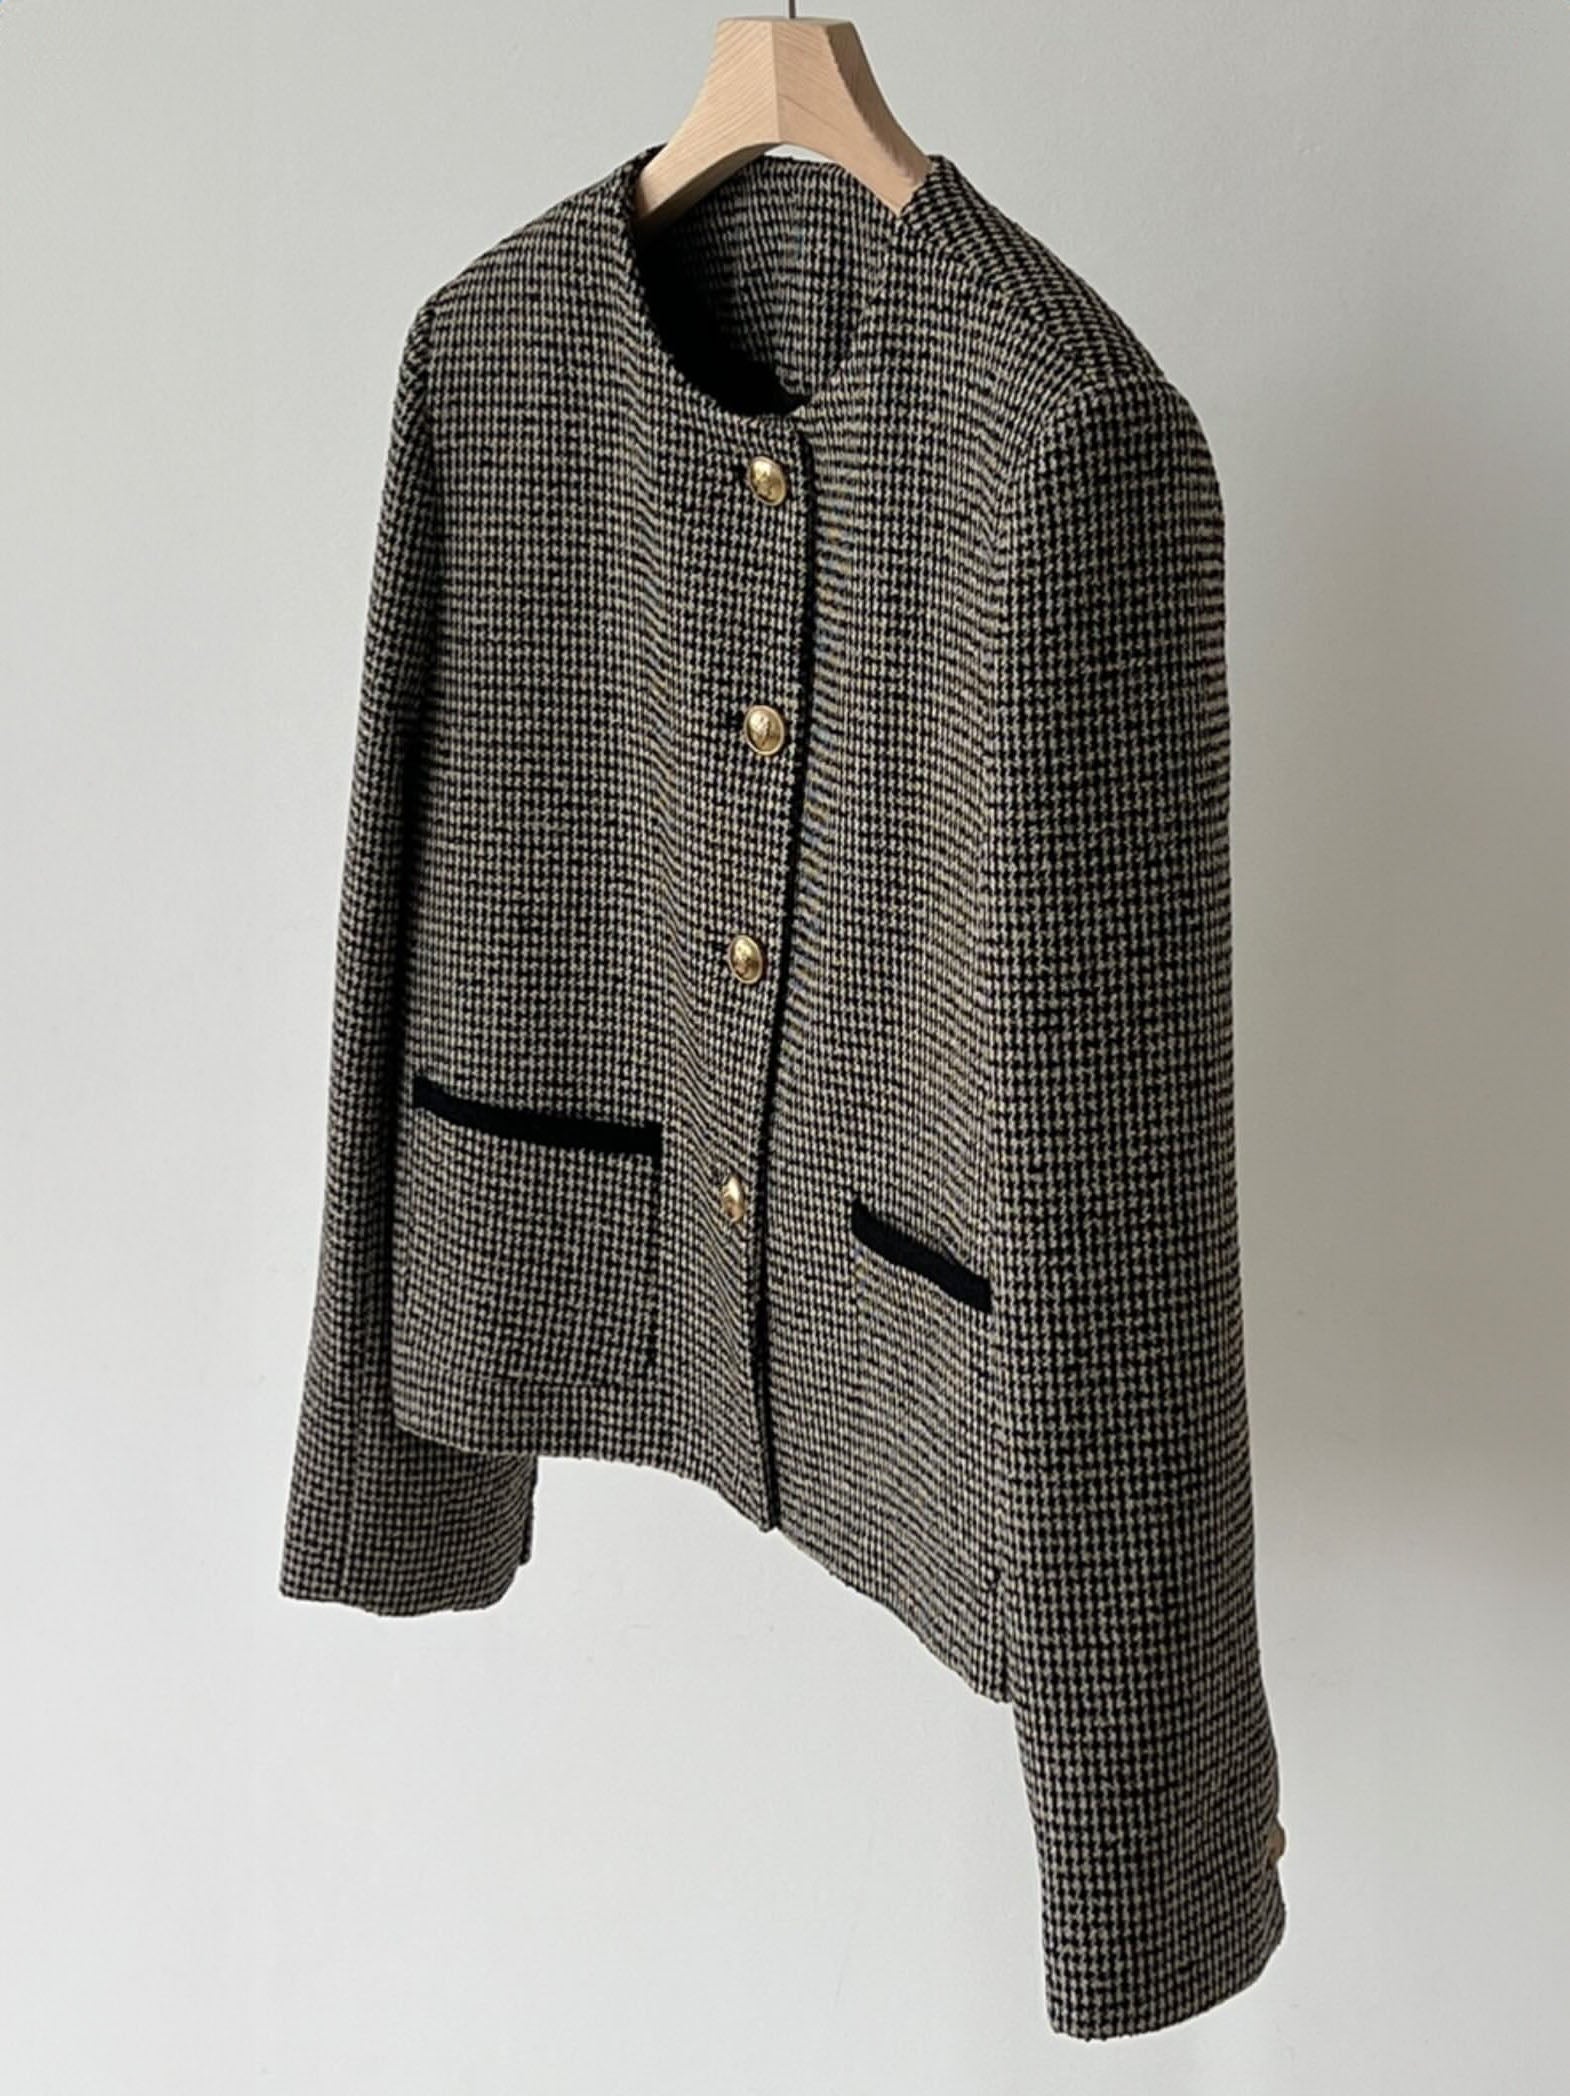 RESTOCK Bella Wool Houndstooth Tweed Jacket